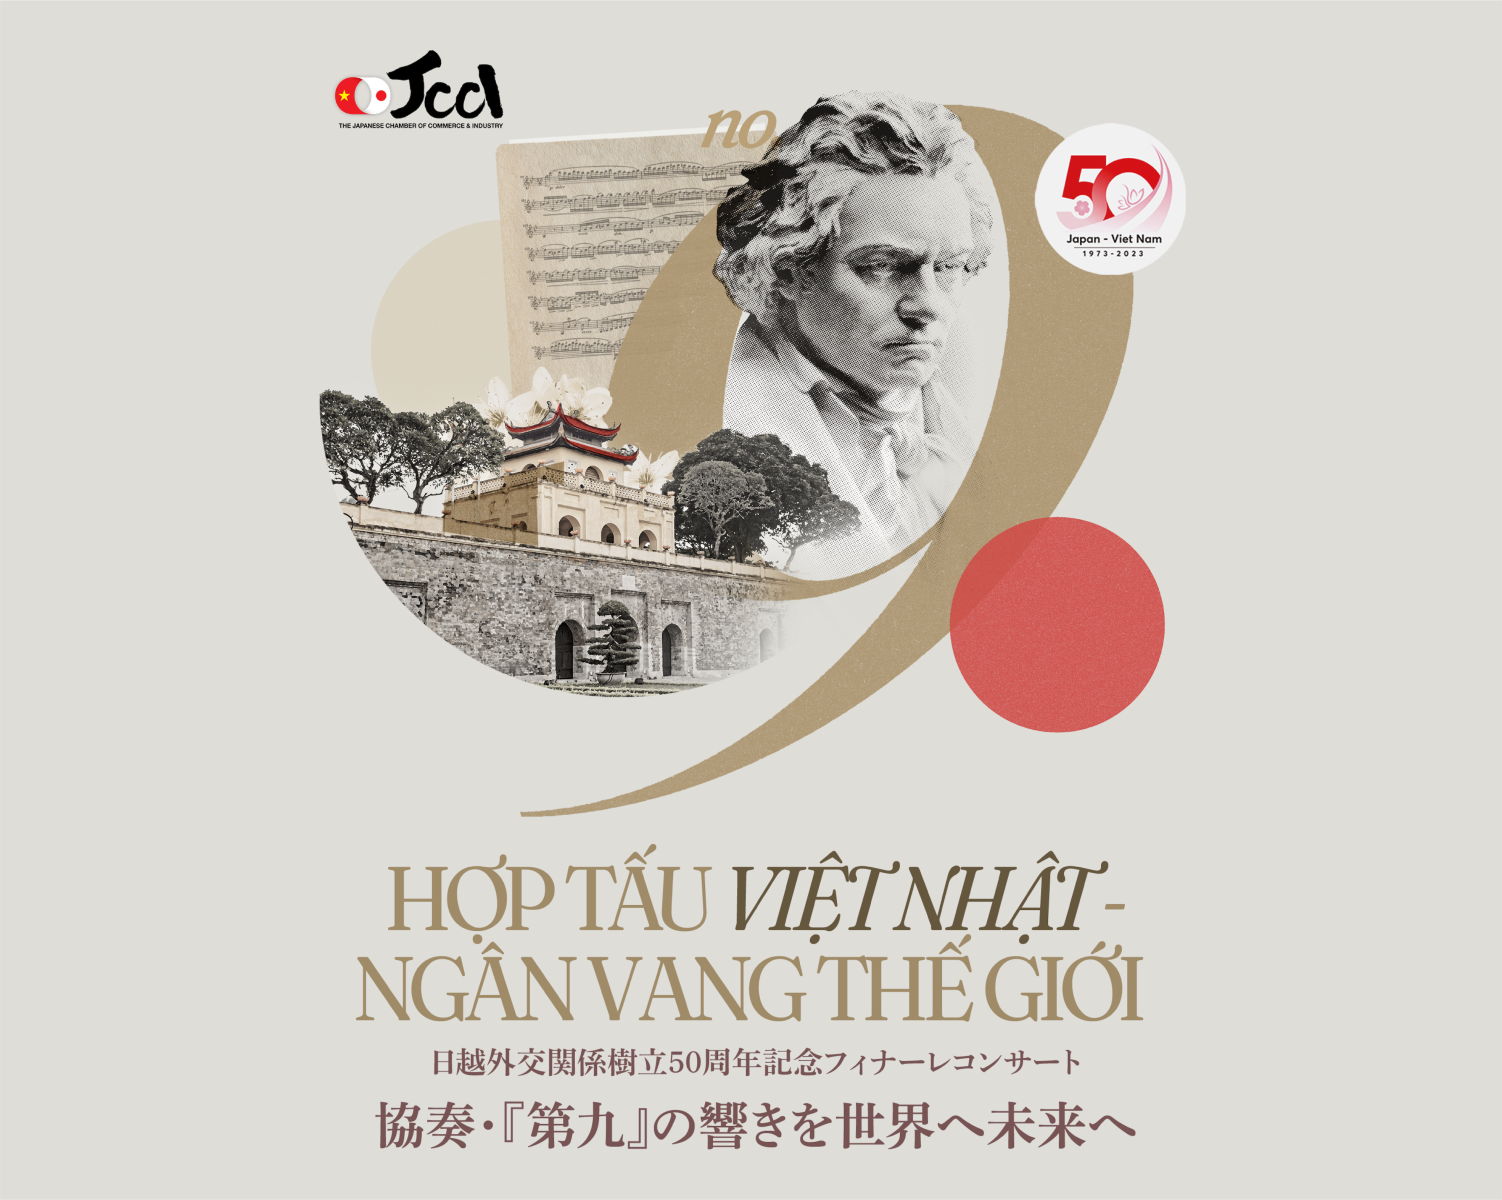 Đêm giao hưởng khép lại năm kỷ niệm 50 năm thiết lập quan hệ ngoại giao Việt Nam - Nhật Bản<br>Hợp tấu Việt Nhật, Ngân vang Thế Giới